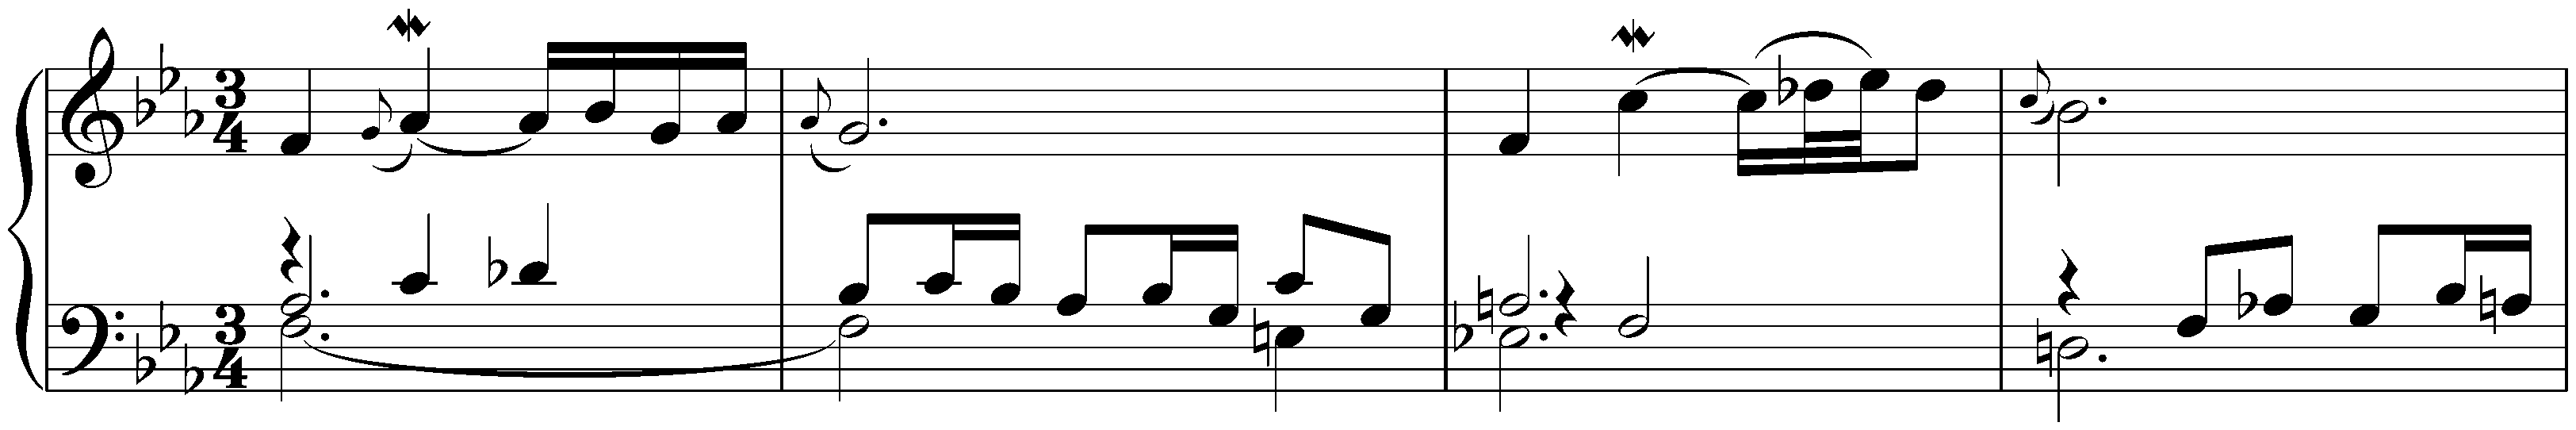 Suite in F minor, BWV 823; 2. Sarabande en Rondeau